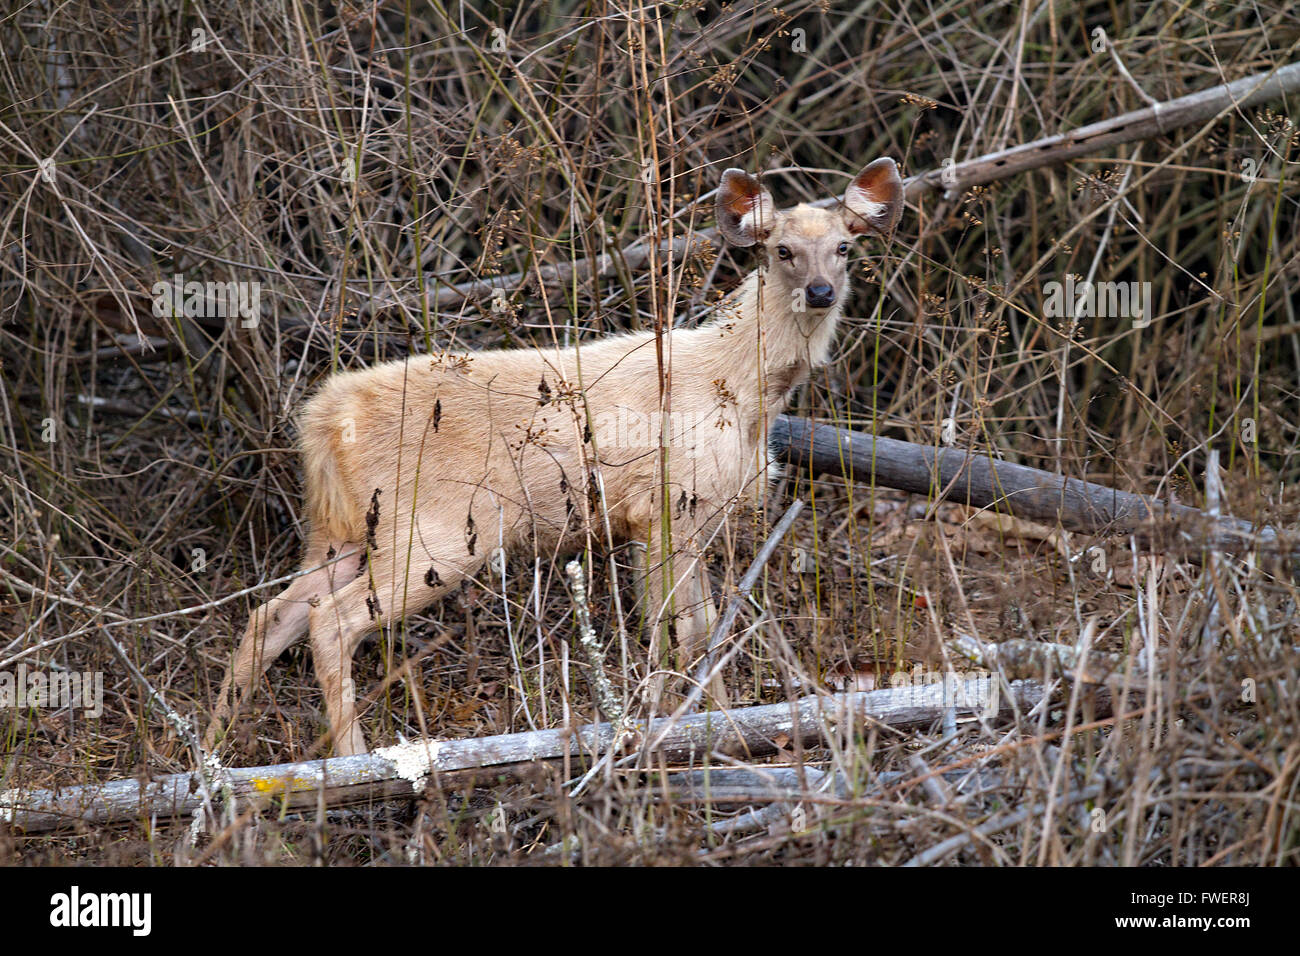 White sambar deer, albinism, Stock Photo